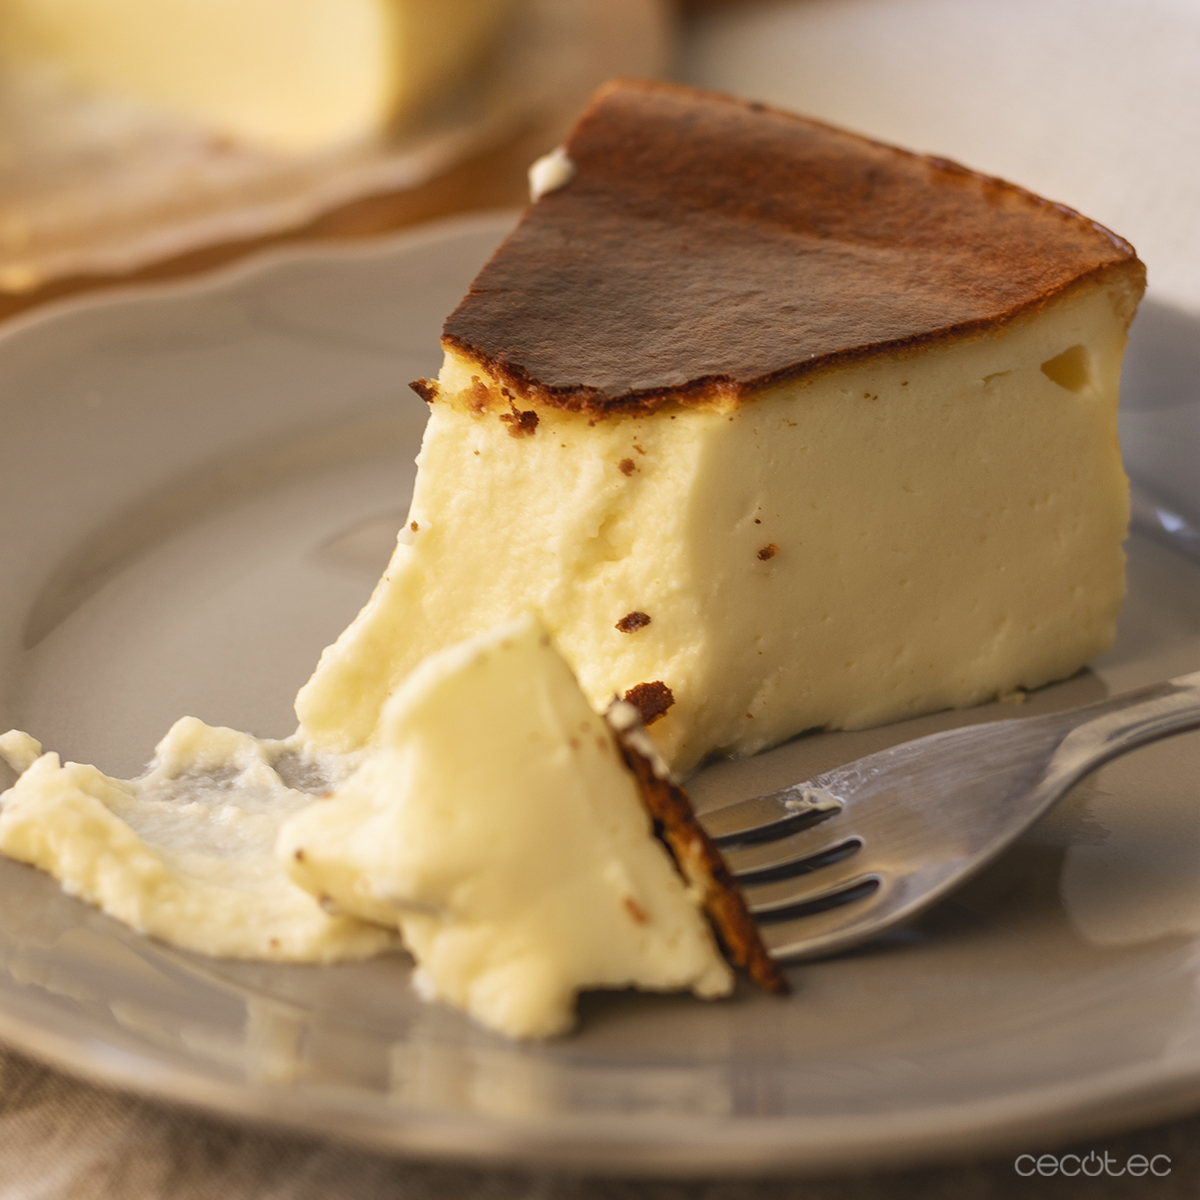 Tarta de queso con chocolate blanco en Cecofry - Recetas Cecotec Mambo ...